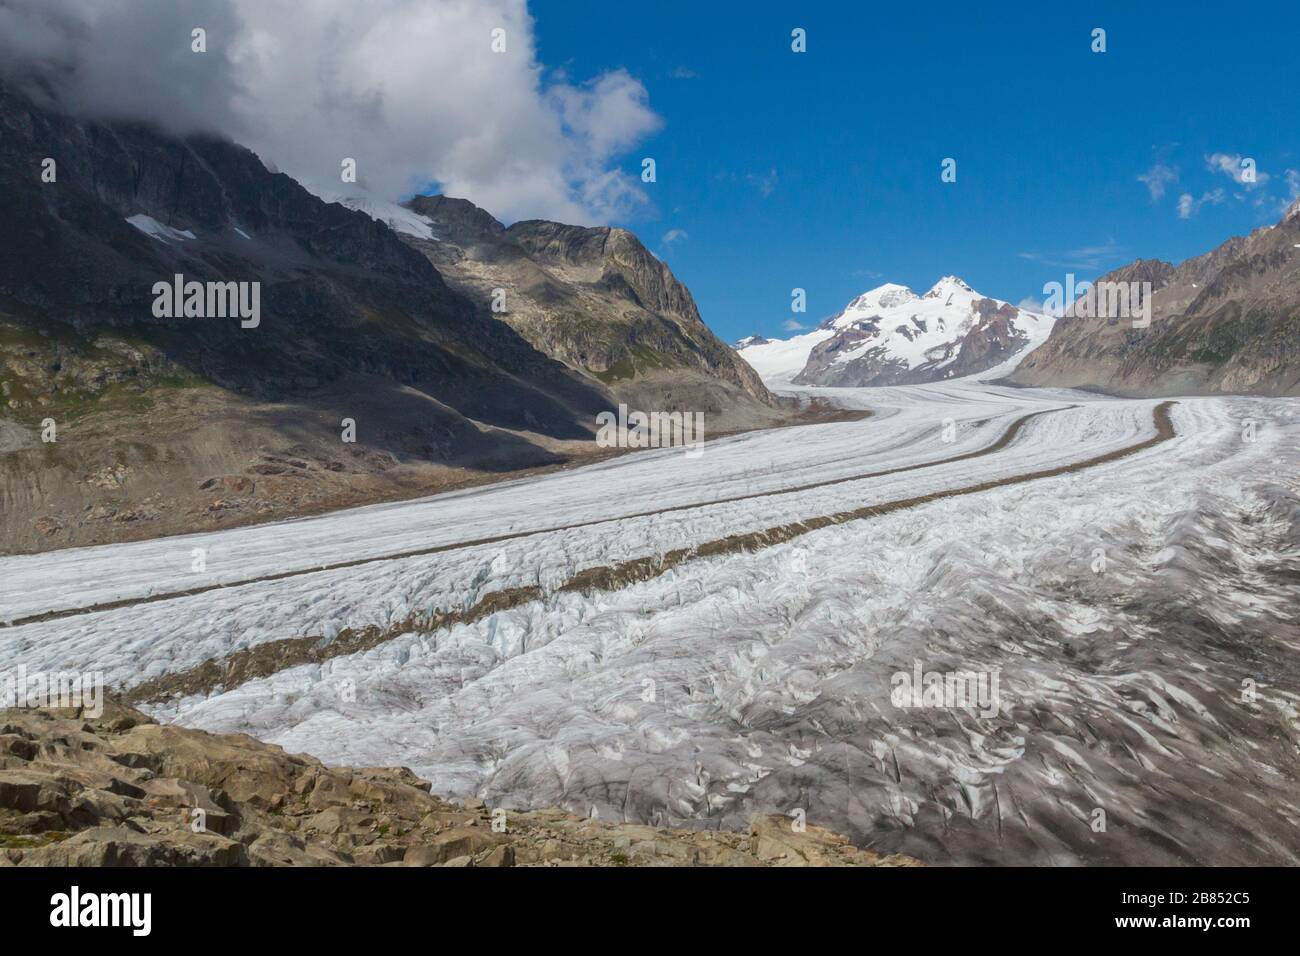 Aletsch glacier in alpine mountain landscape in Switzerland, blue sky Stock Photo